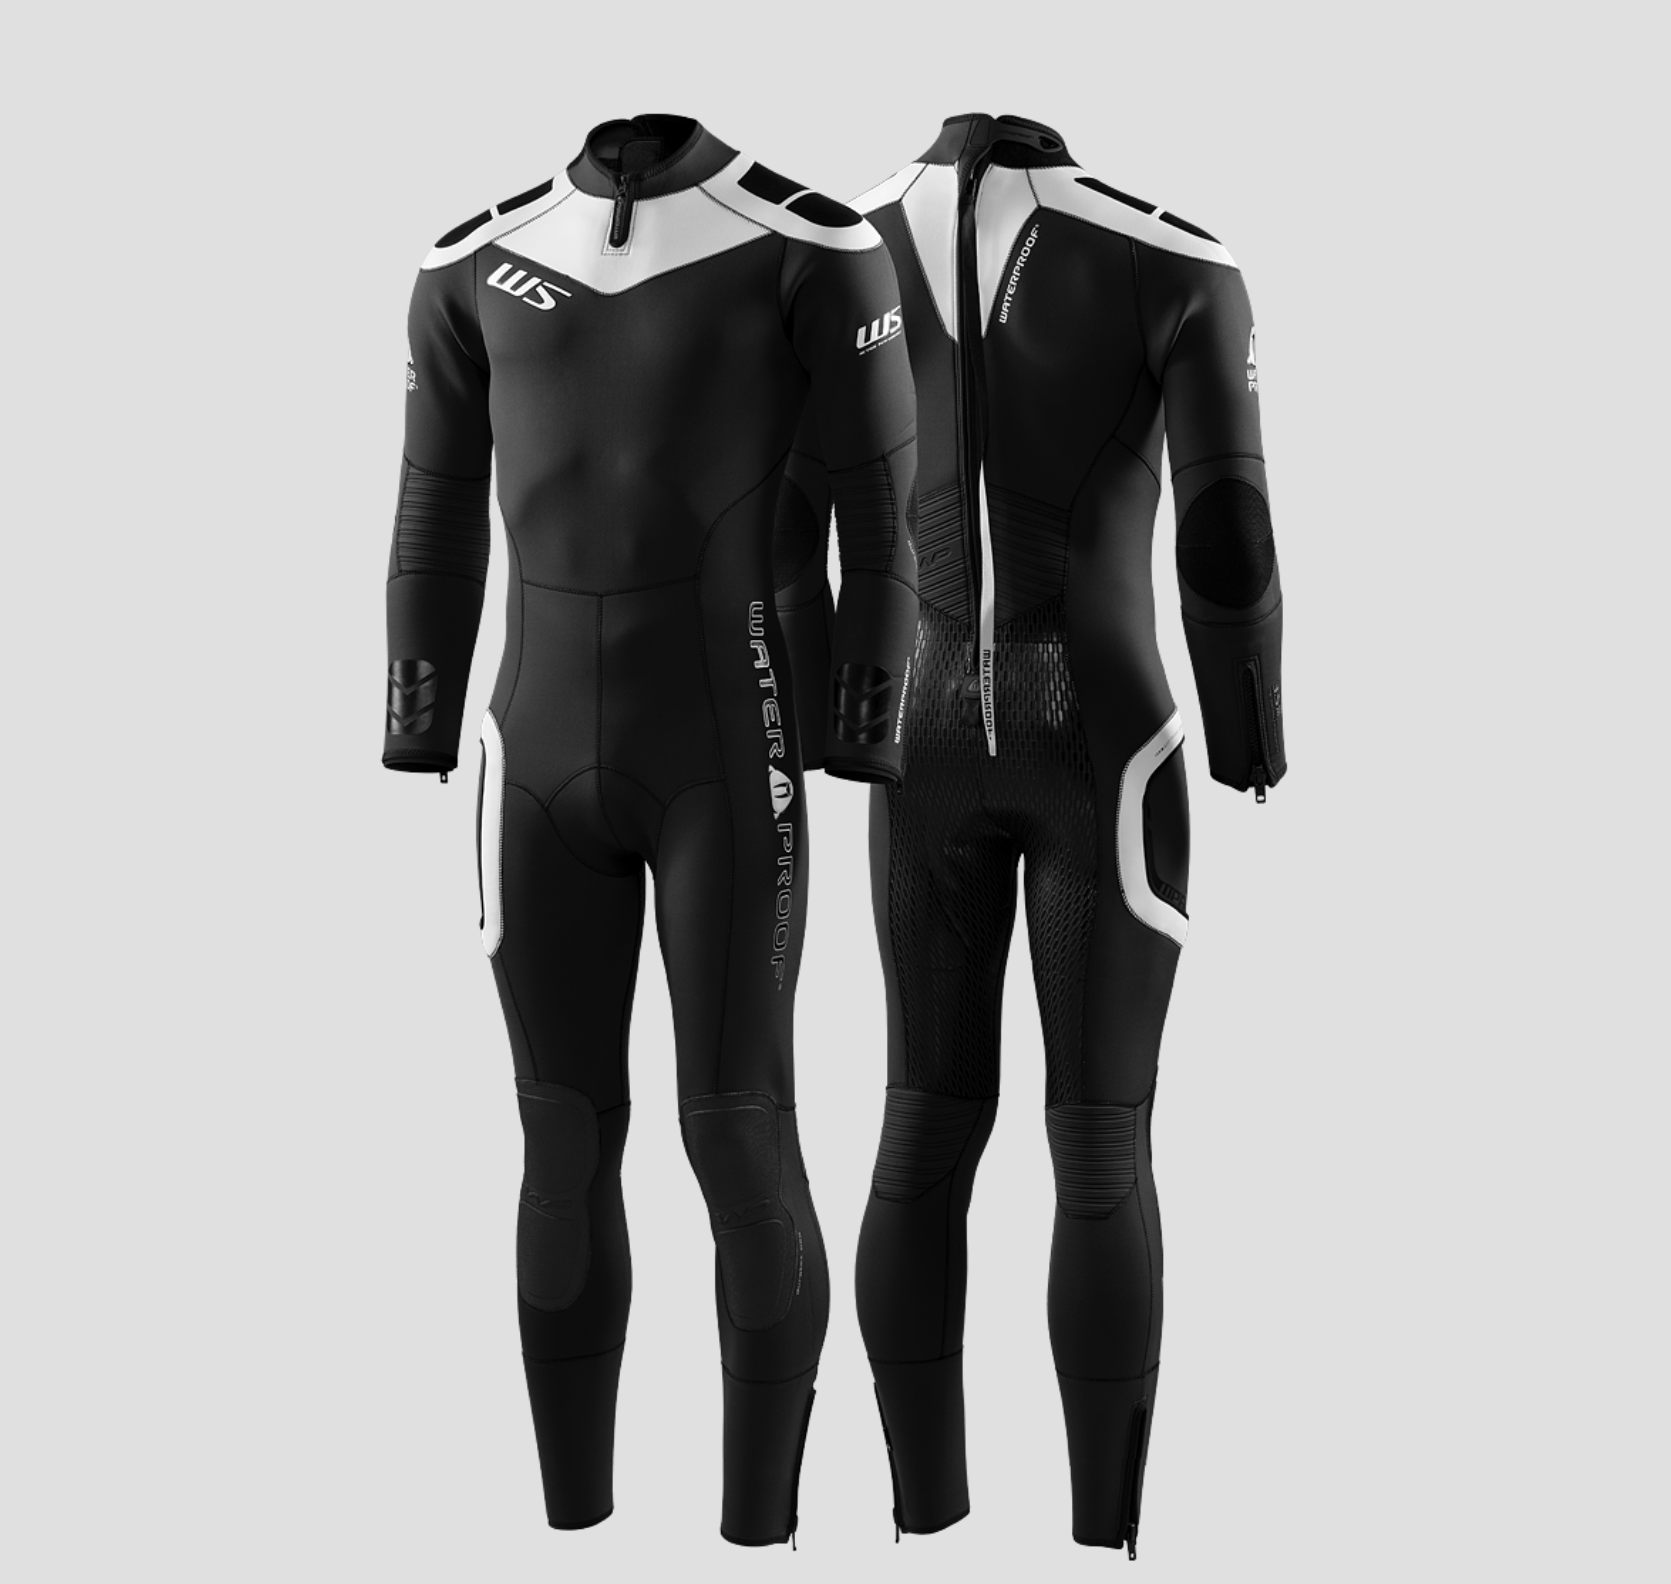 WATERPROOF W5 Full Suit 3.5mm Men חליפה רטובה 3.5 מ"מ לגברים